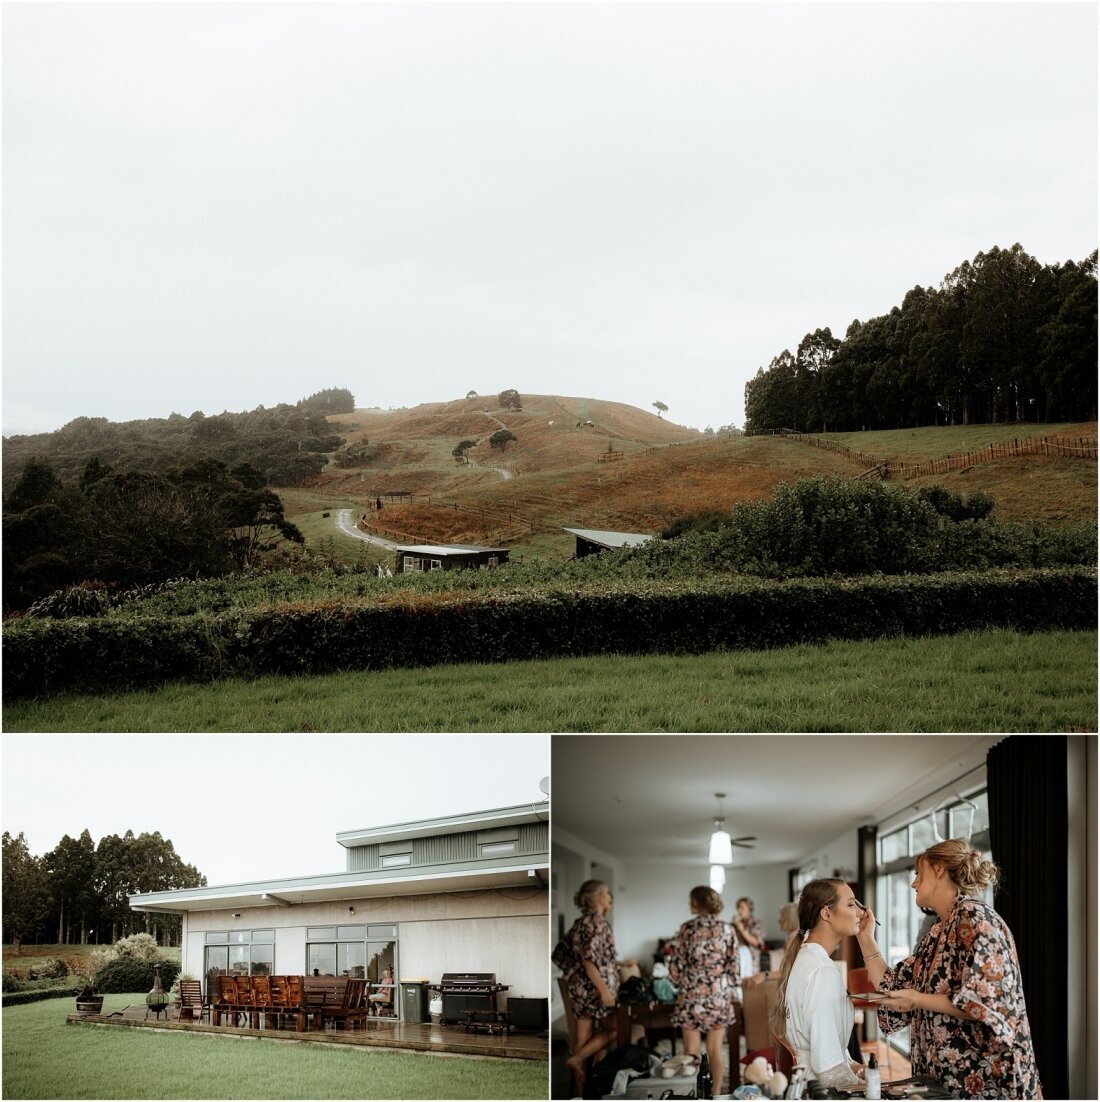 Zanda+Auckland+wedding+photographer+boho+vintage+lace+retro+The+barn+Waimauku+venue+New+Zealand_5.jpeg